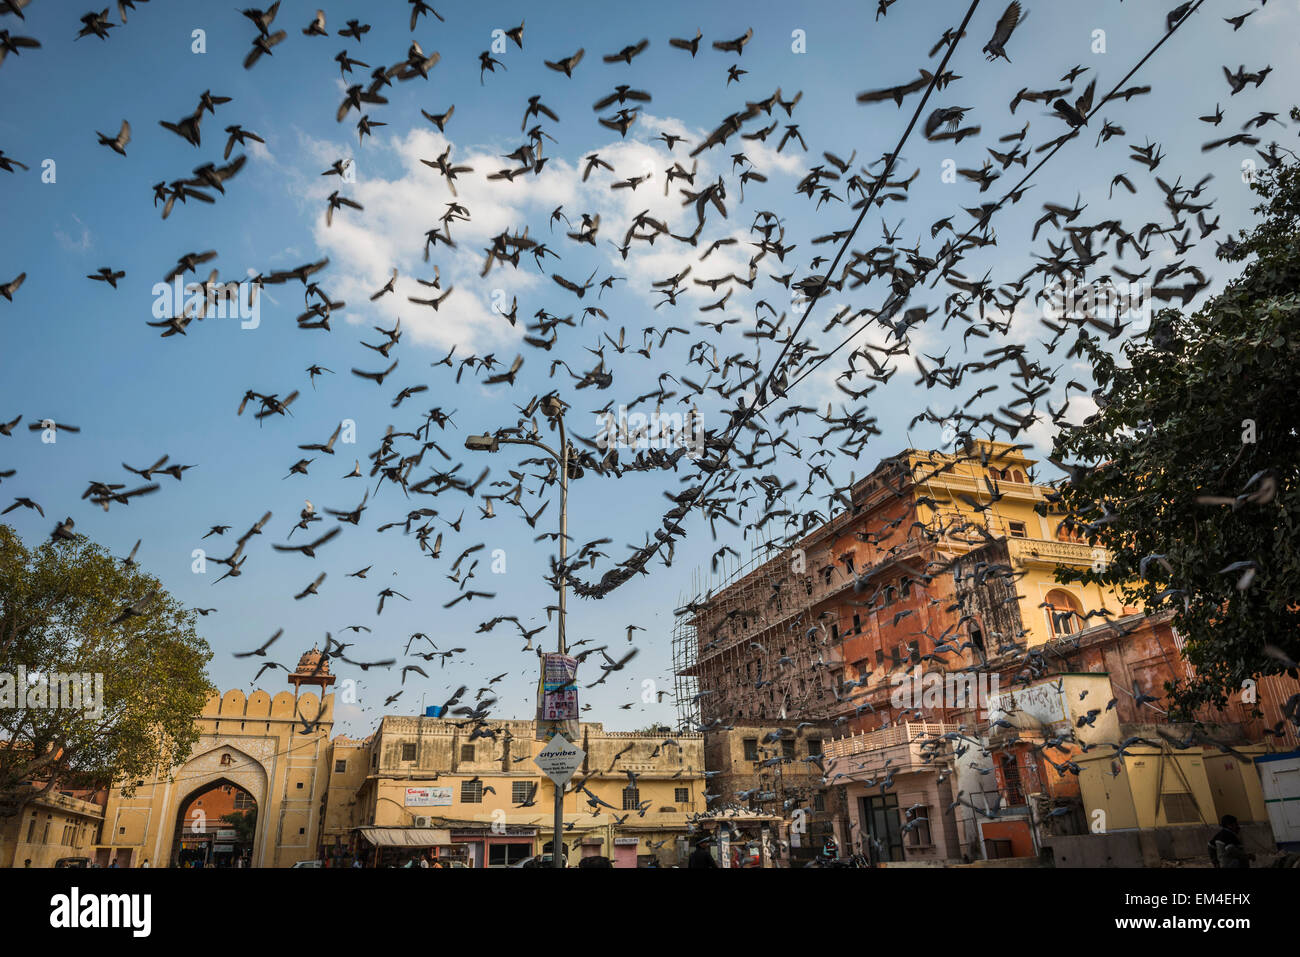 La Plaza de la ciudad de Jaipur, Rajasthan donde la gente viene a hacer ofrendas a las palomas locales para la buena suerte. Foto de stock